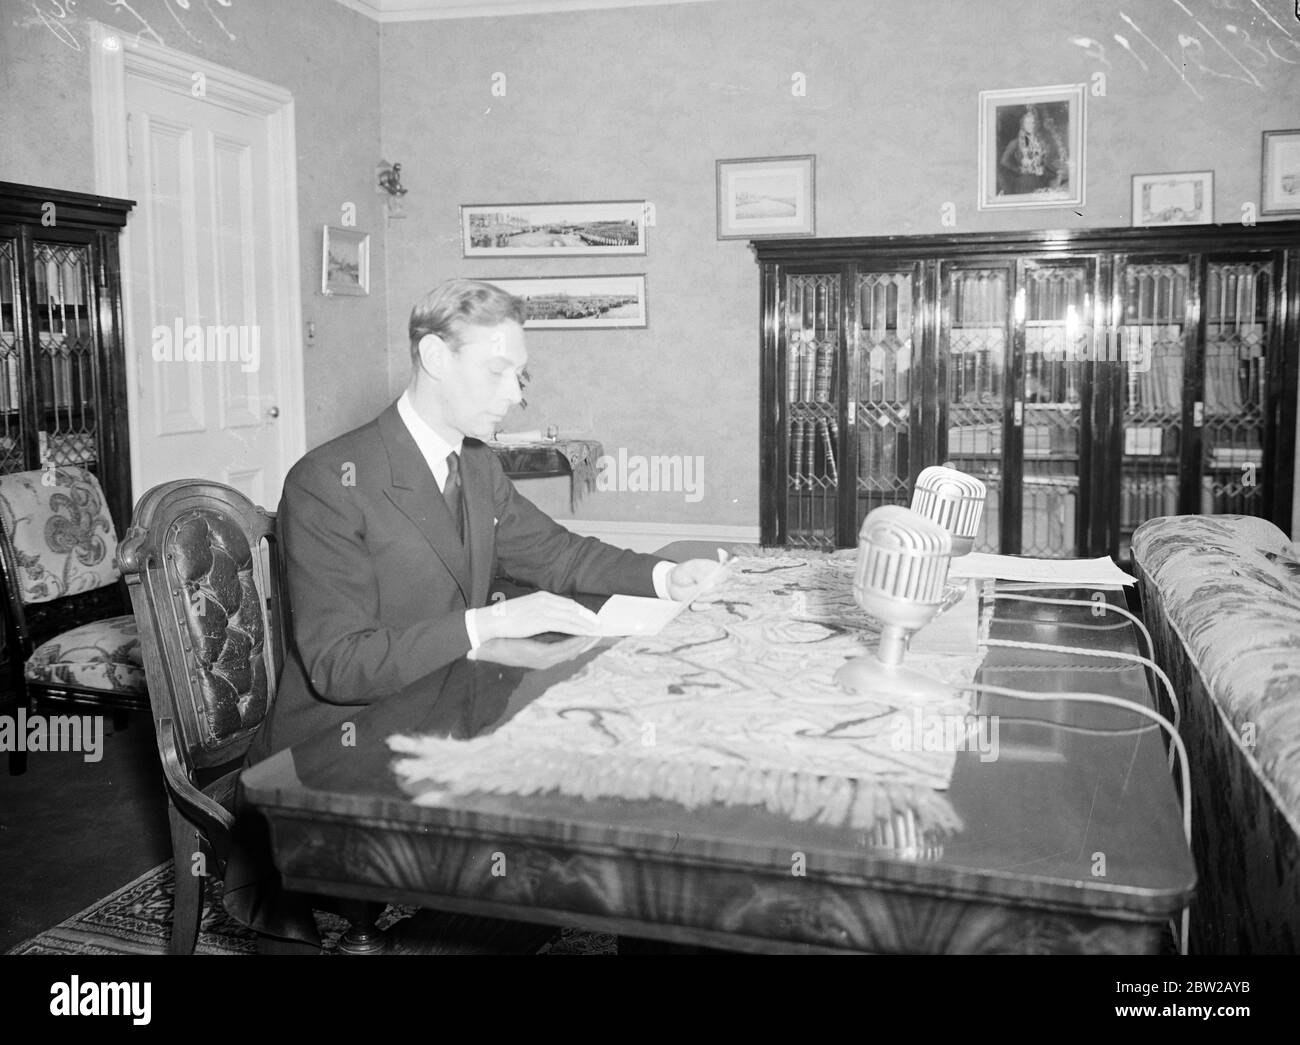 La journée du Roi Empire. Le roi s'adressant à l'Empire de la Maison du gouvernement, à Winnipeg, le jour de l'Empire. [Discours de King] 24 mai 1939 Banque D'Images